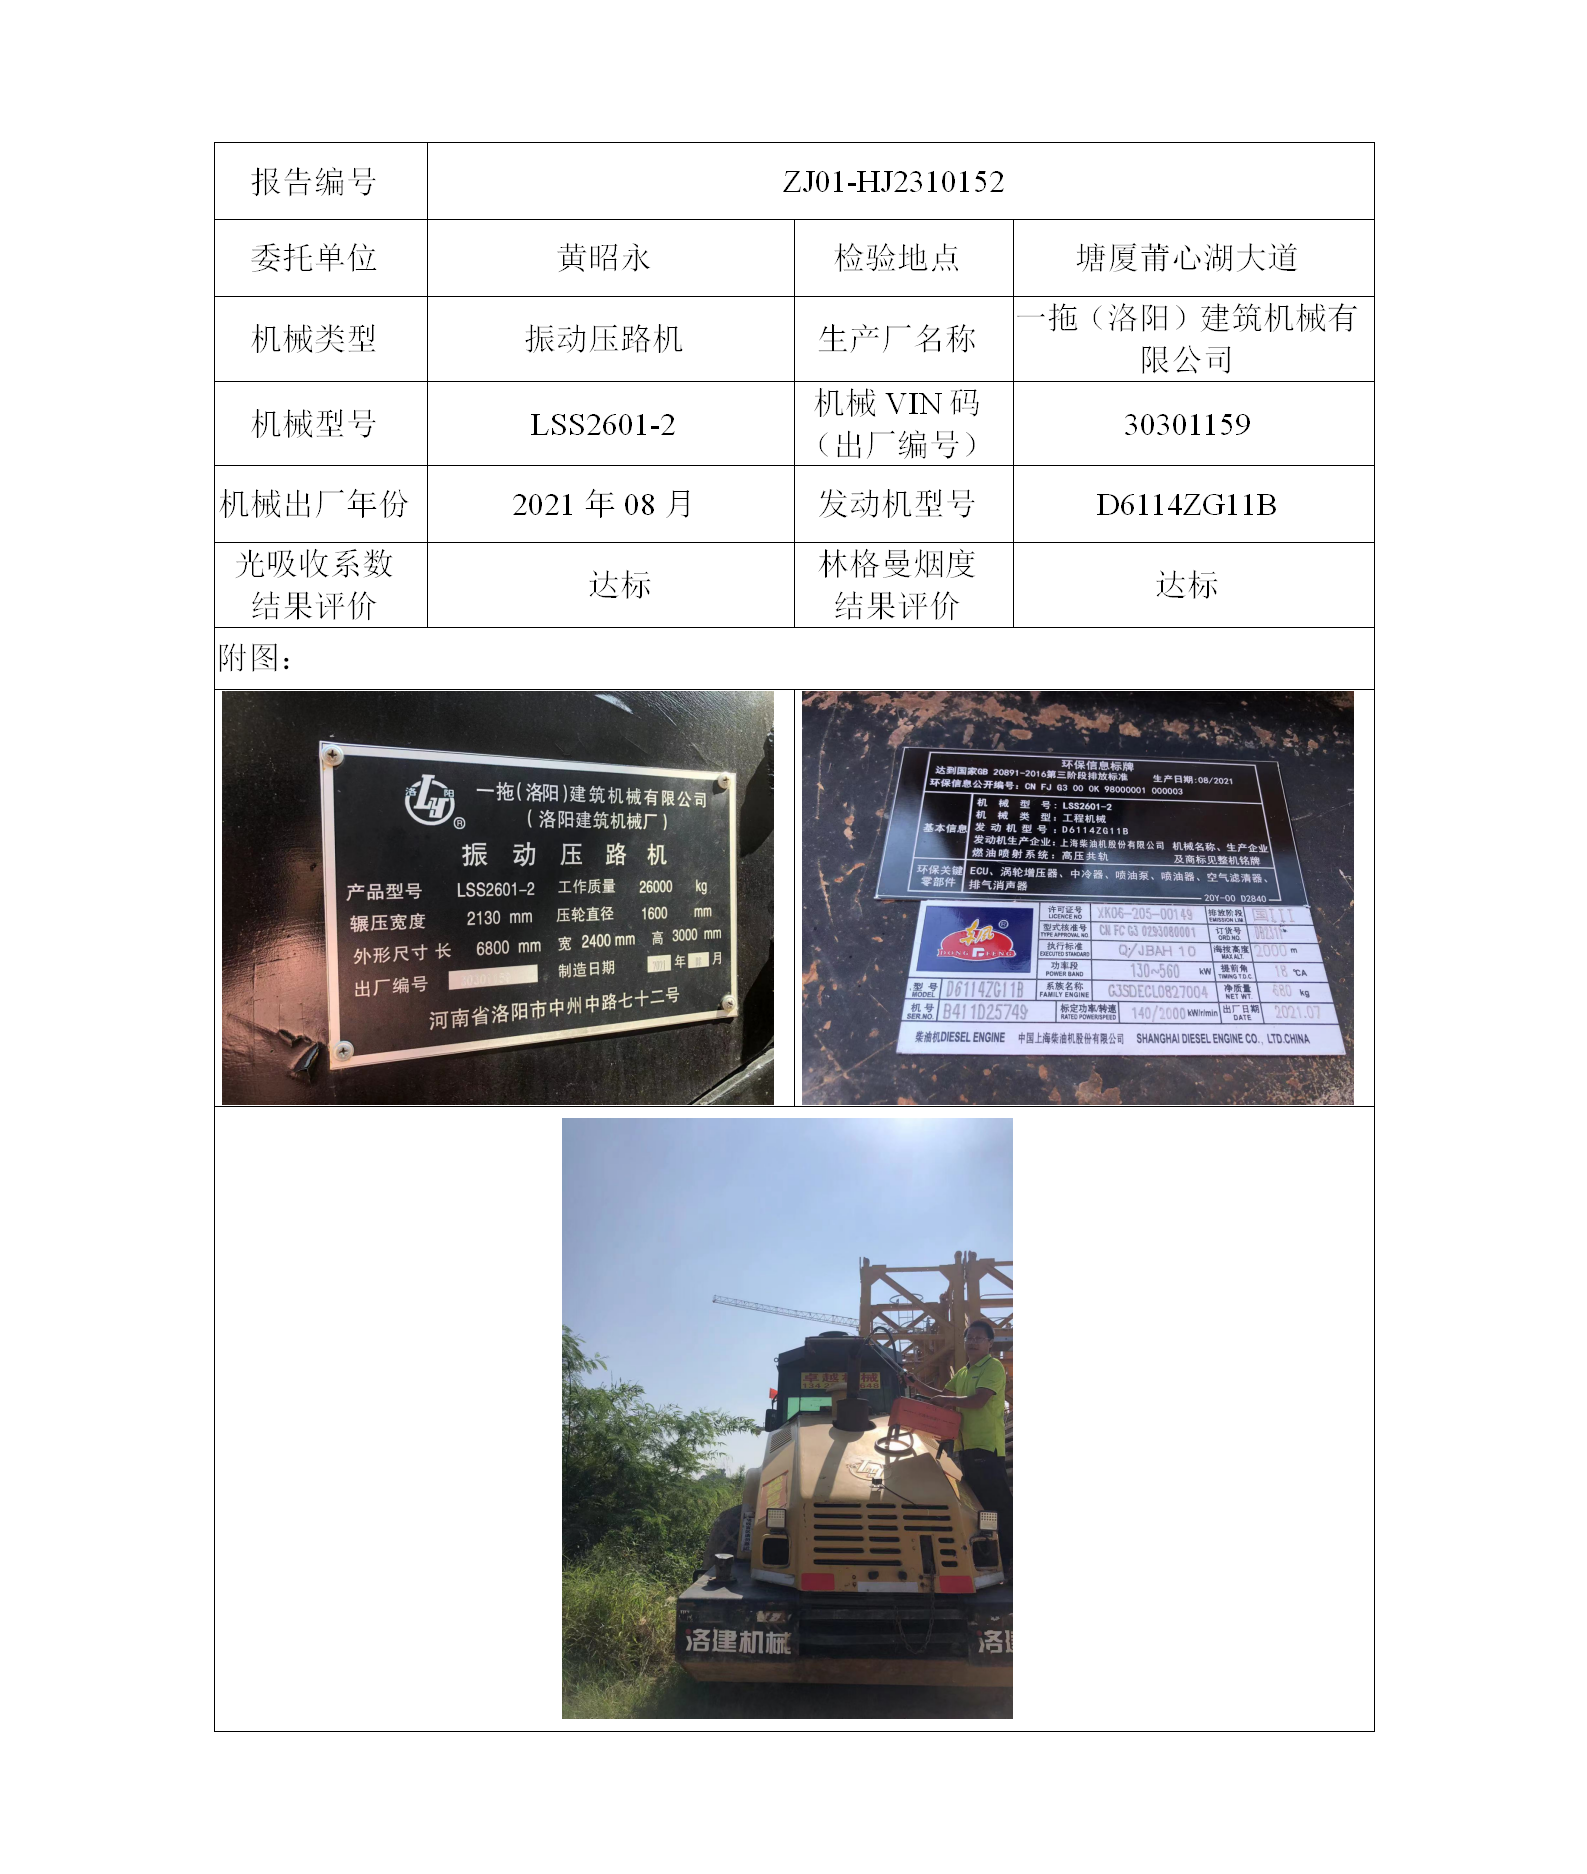 委托-ZJ01-HJ2310152黄昭永的非道路机械设备二维码-张伟仪_01.png